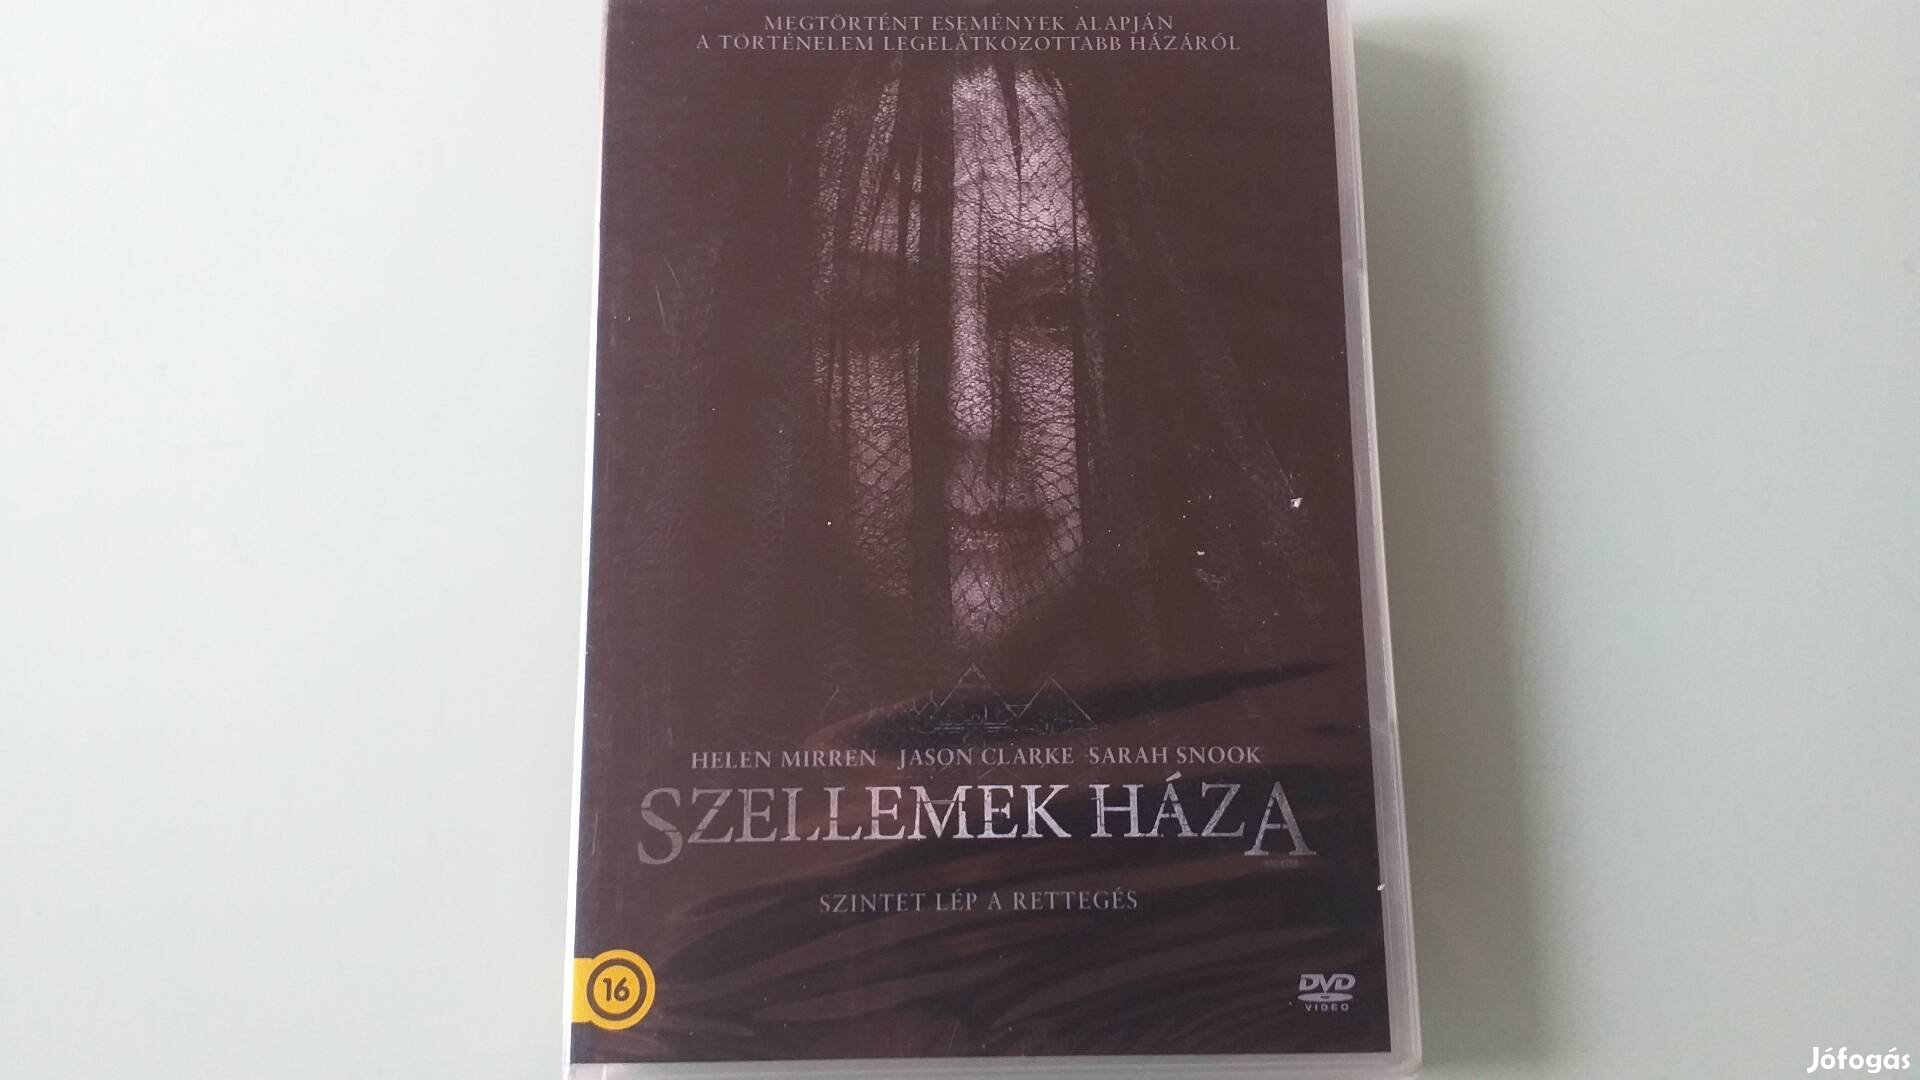 Szellemek háza horror /fantasy  DVD film 2018 -Helen Mirren